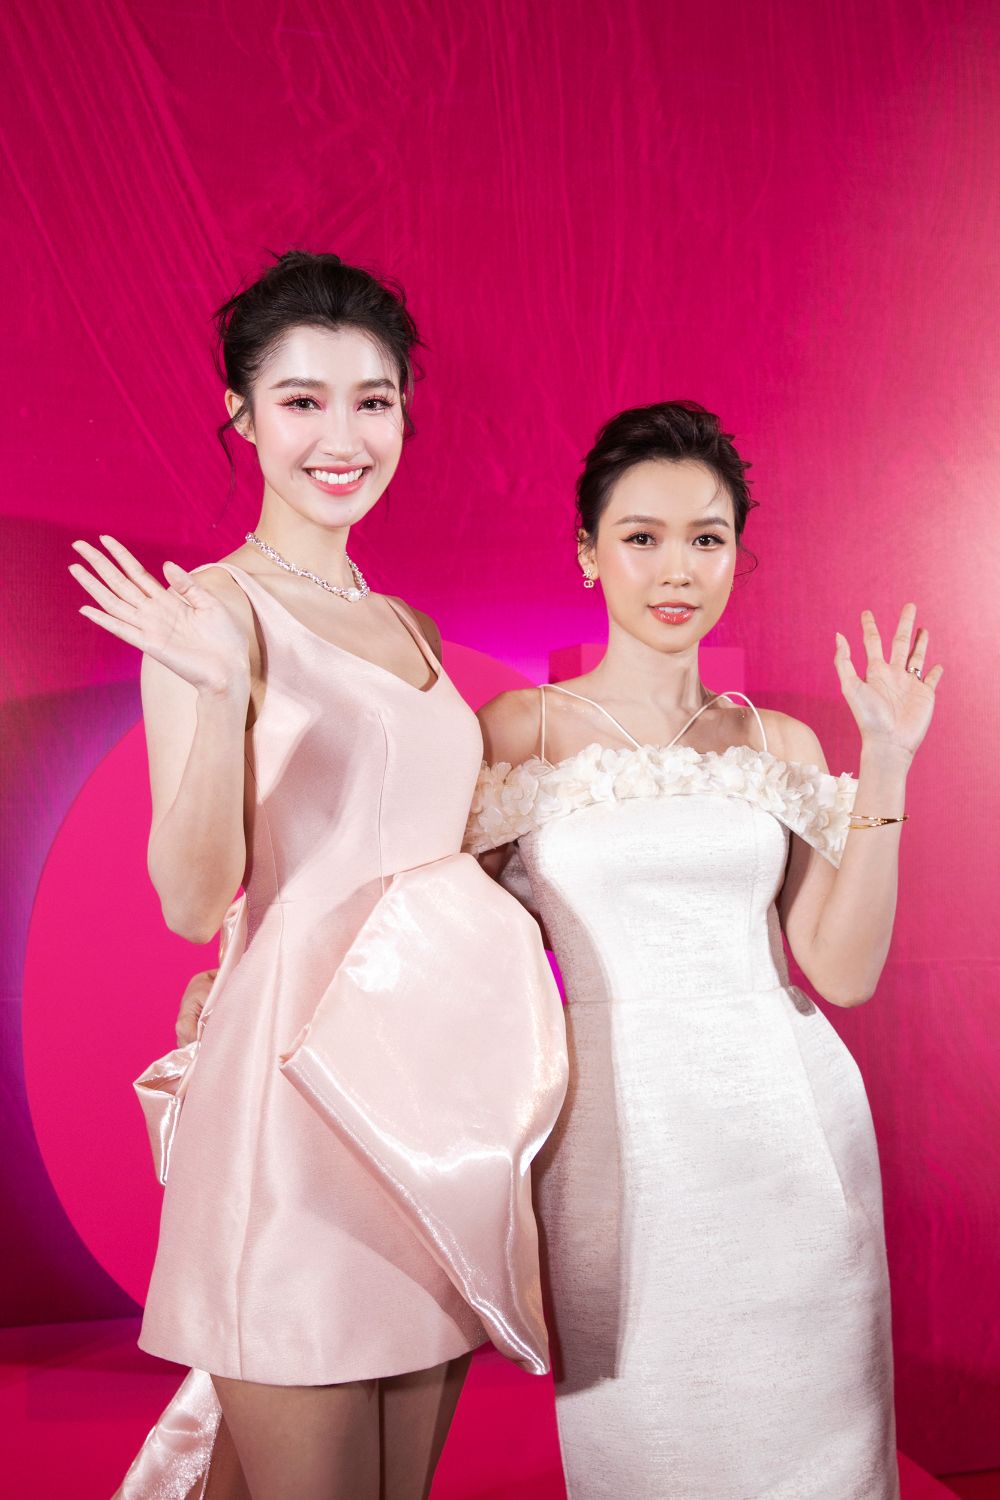 show diễn thời trang IVY moda 6 Minh Hằng khoe thần sắc “mẹ bầu” hội ngộ Tóc Tiên, Sam, Phương Nhi